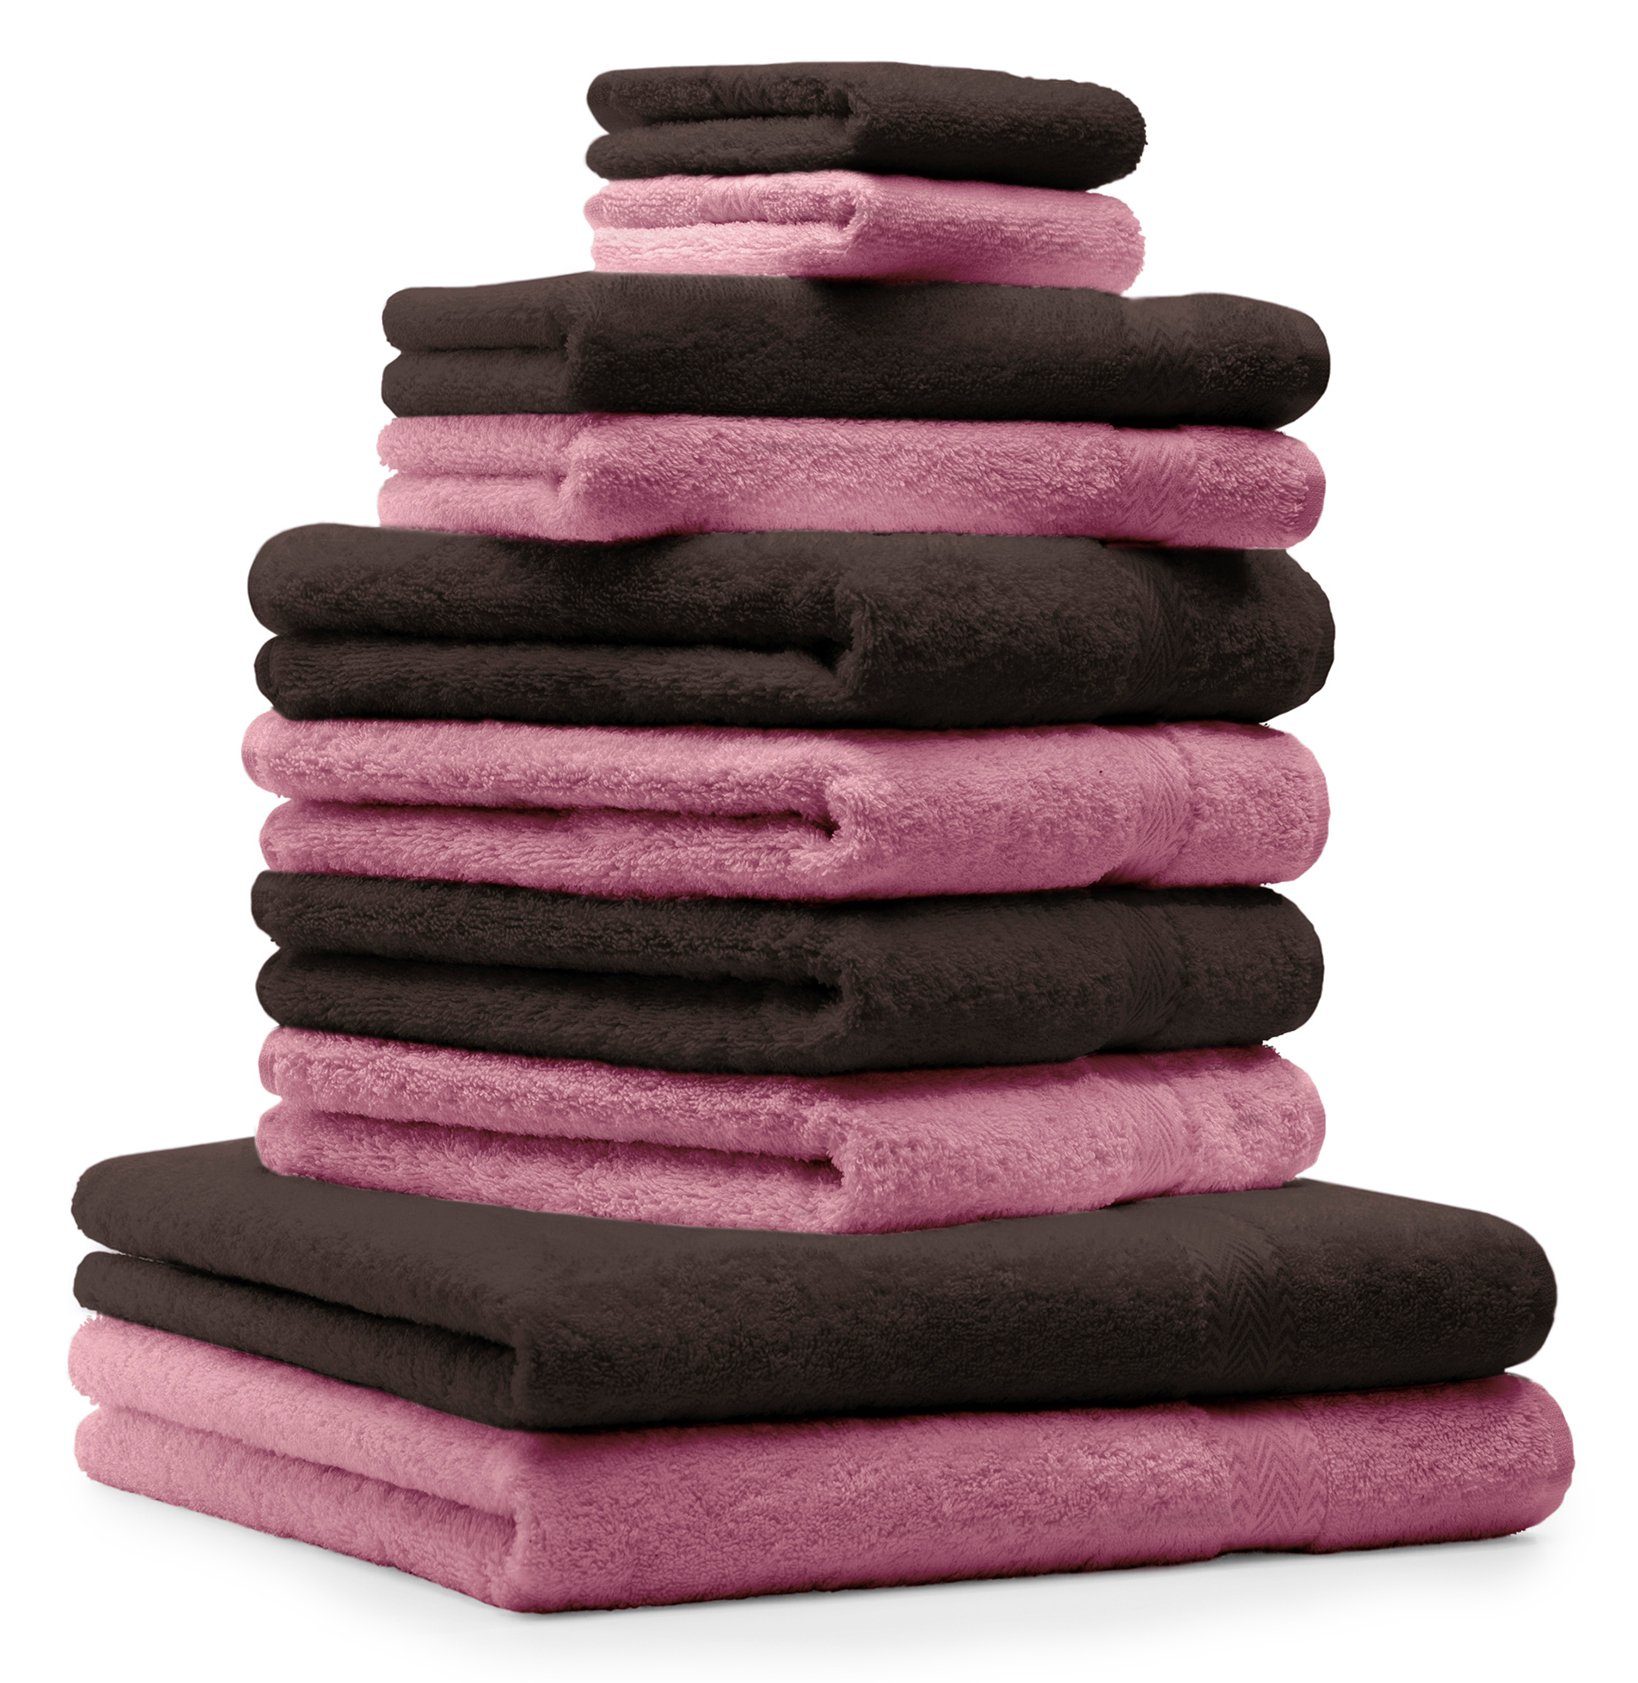 Betz Handtuch Set 10-TLG. Handtuch-Set Premium Farbe Dunkelbraun & Altrosa, 100% Baumwolle, (Set, 10-tlg) | Handtuch-Sets